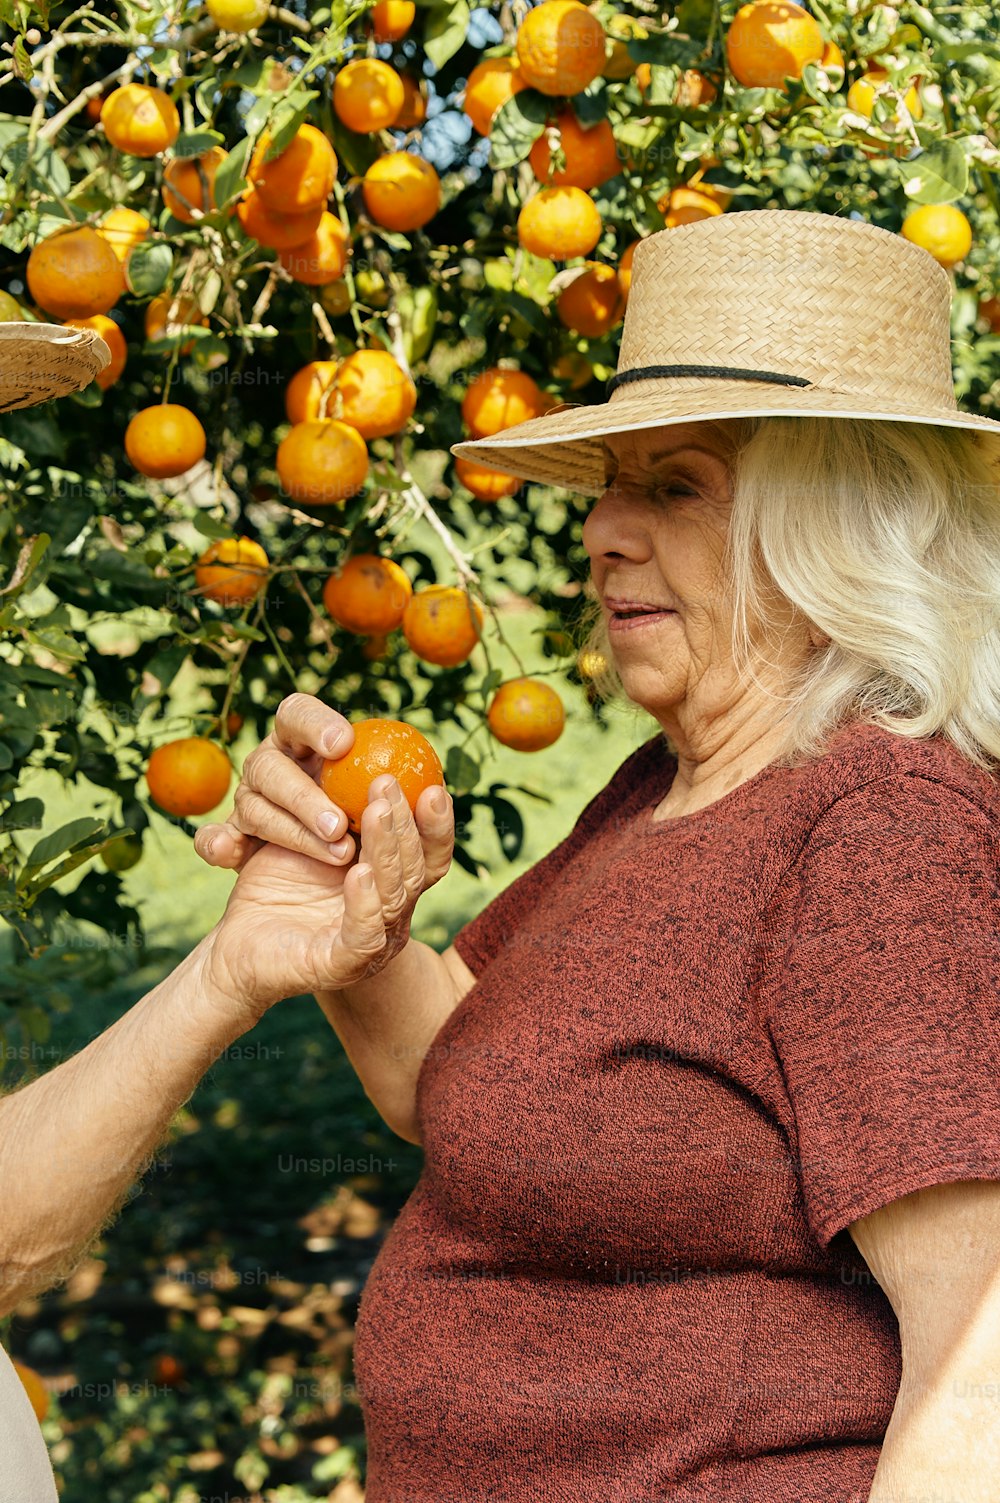 Una mujer con un sombrero de paja recogiendo naranjas de un árbol